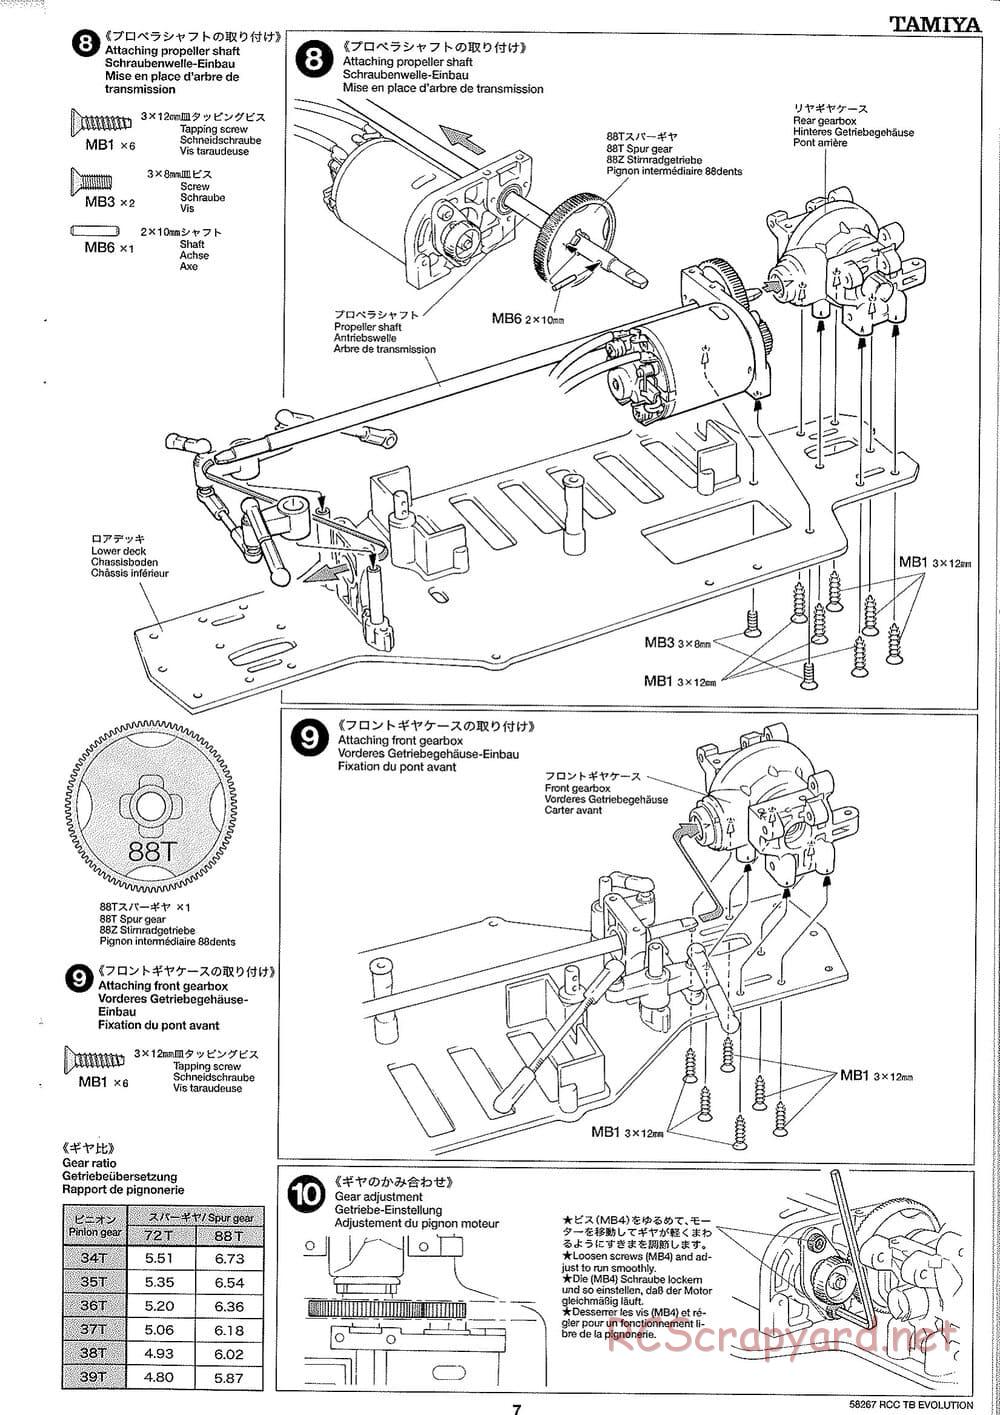 Tamiya - TB Evolution Chassis - Manual - Page 7